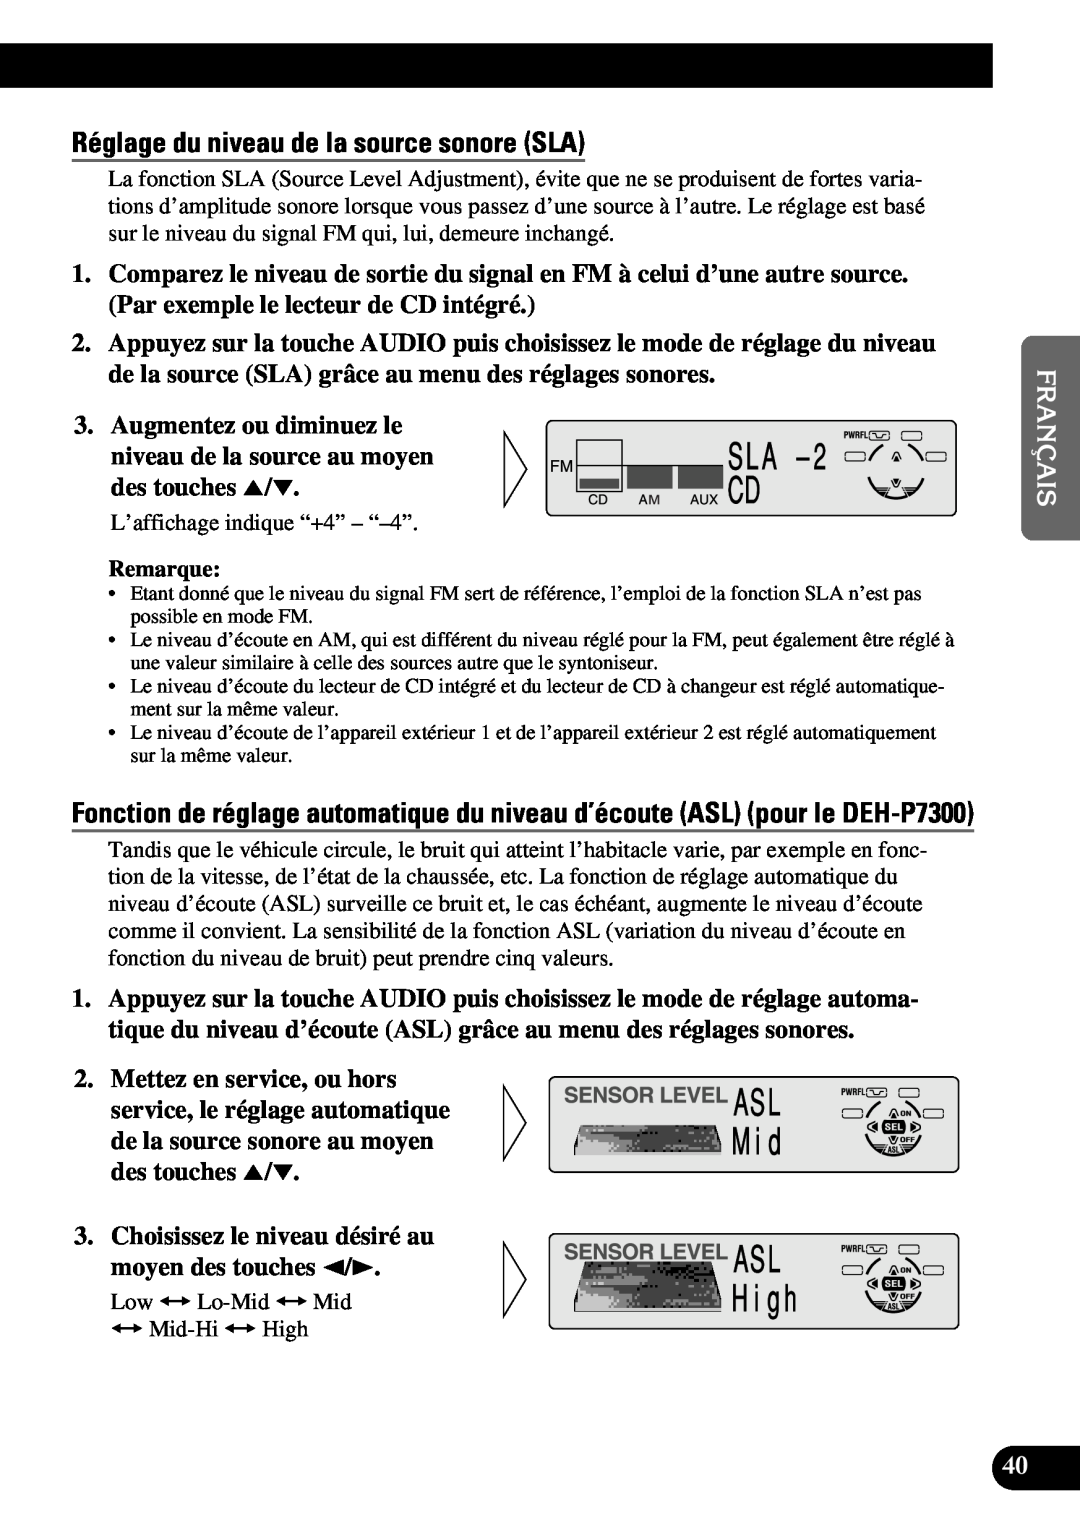 Pioneer DEH-P6300 Réglage du niveau de la source sonore SLA, Augmentez ou diminuez le, Mettez en service, ou hors 